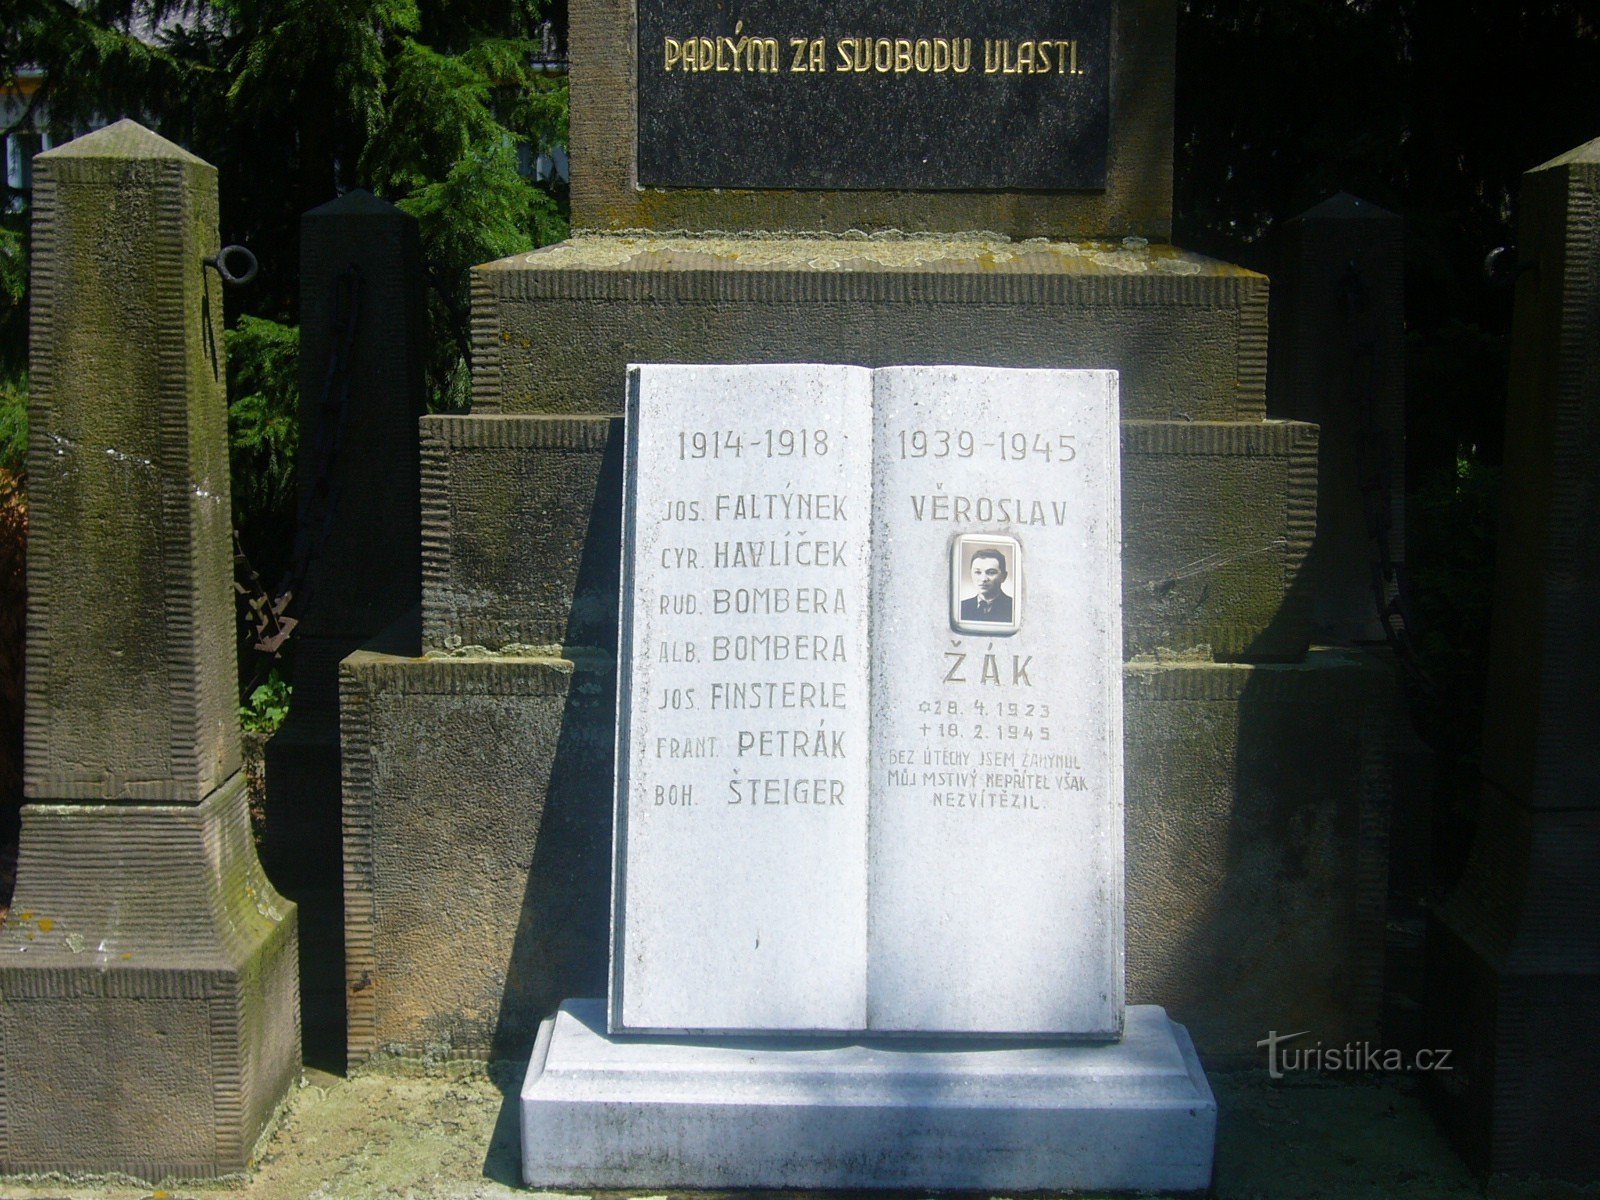 Vranová - monumento a los caídos en el 1er St. cilindros